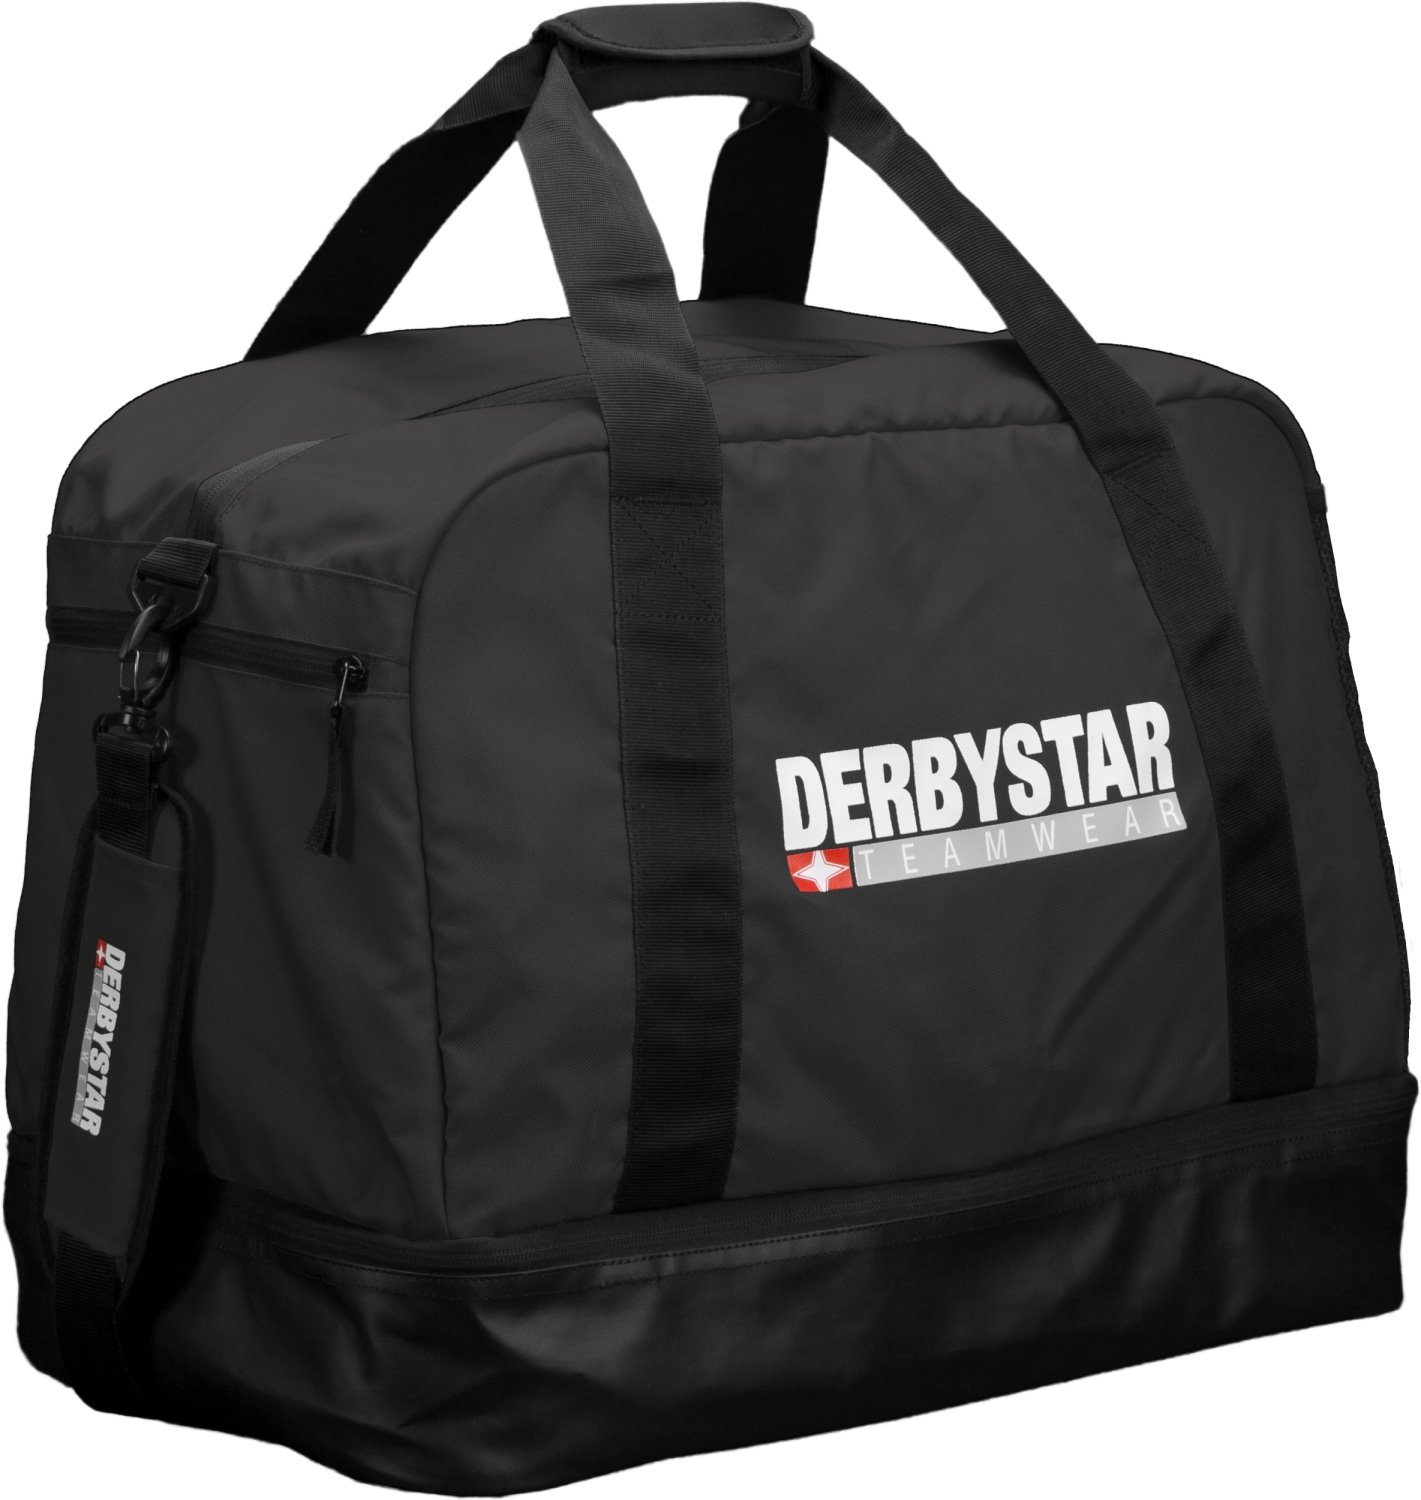 Derbystar Sporttasche mit M Schuhfach Sporttasche